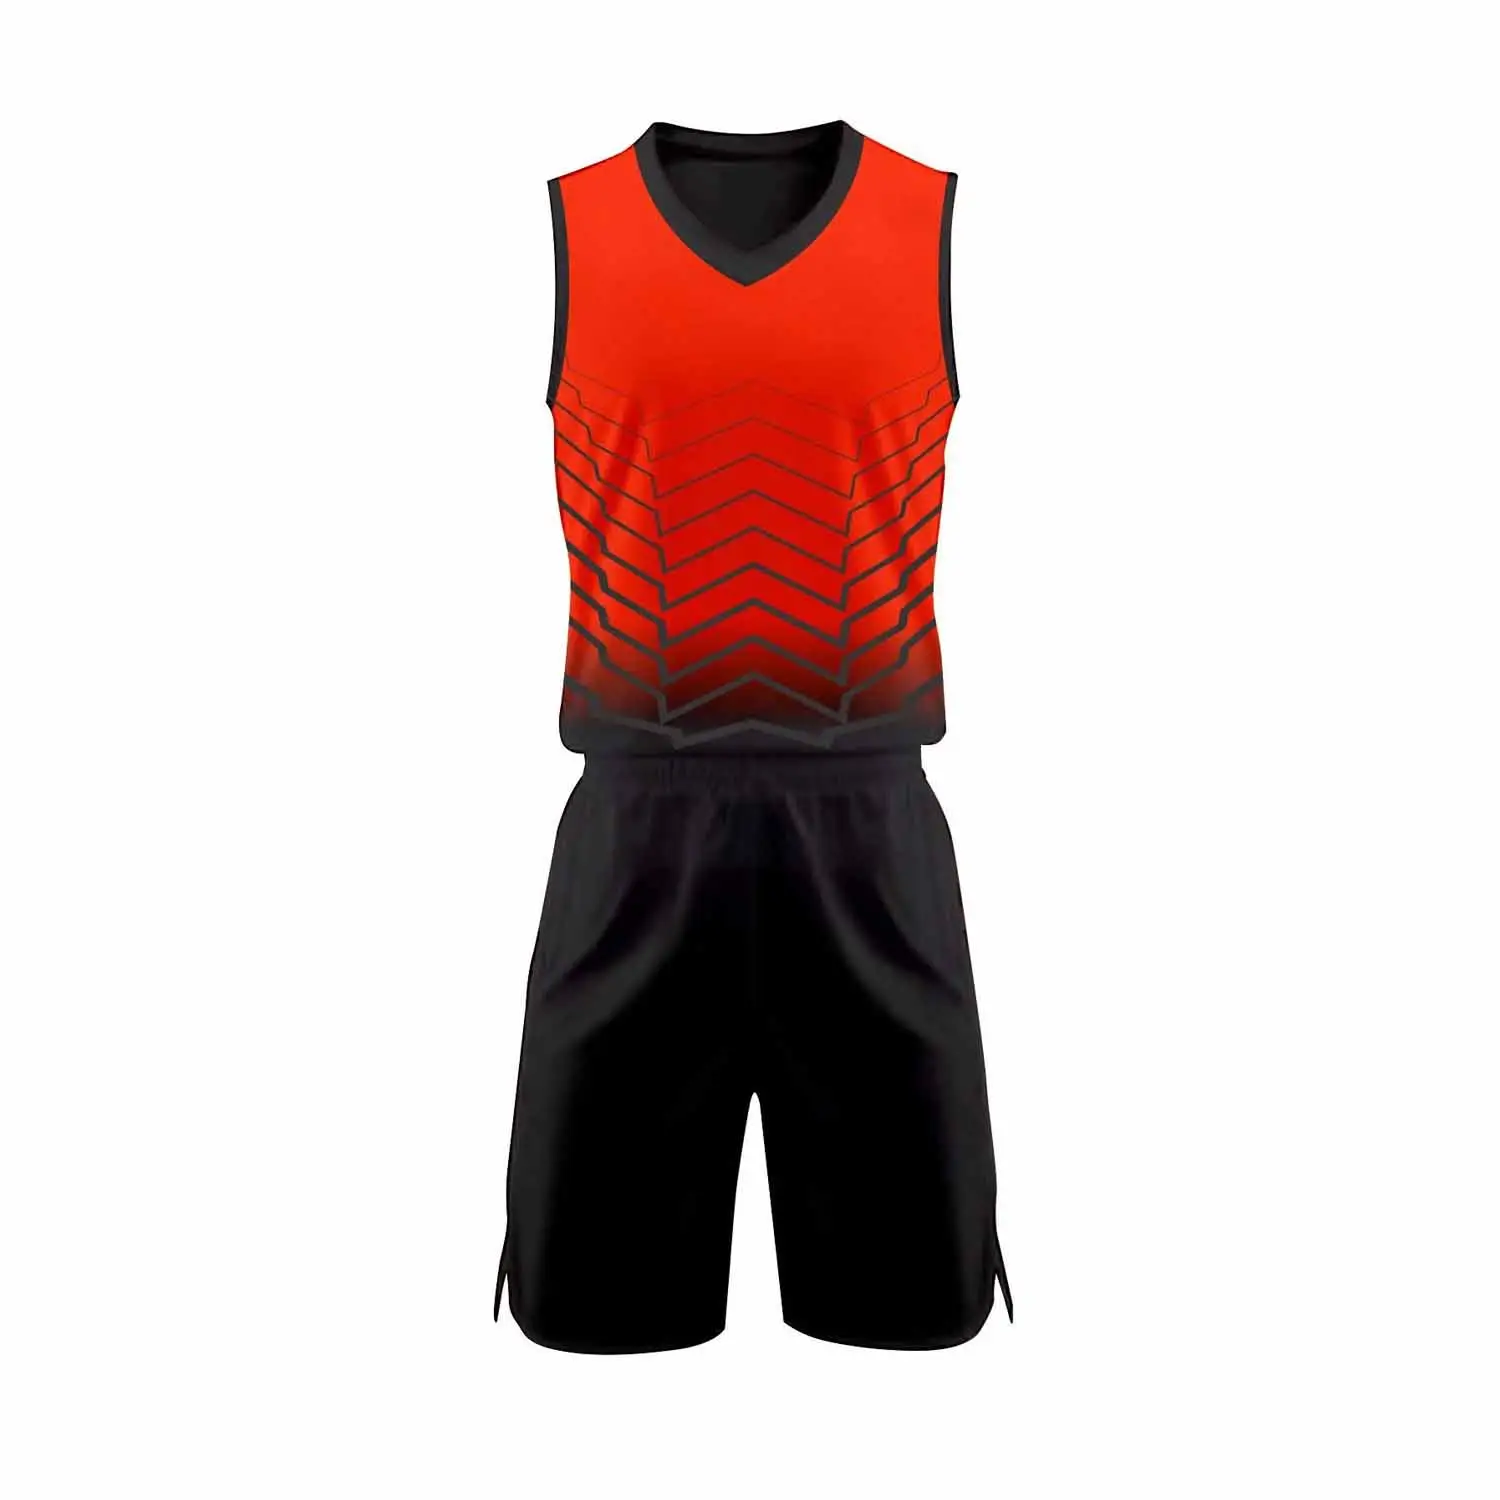 Color rojo con juegos negros 7 En y uniforme Impreso sublimación Uniforme de fútbol americano 7v7 de alta calidad hecho a medida